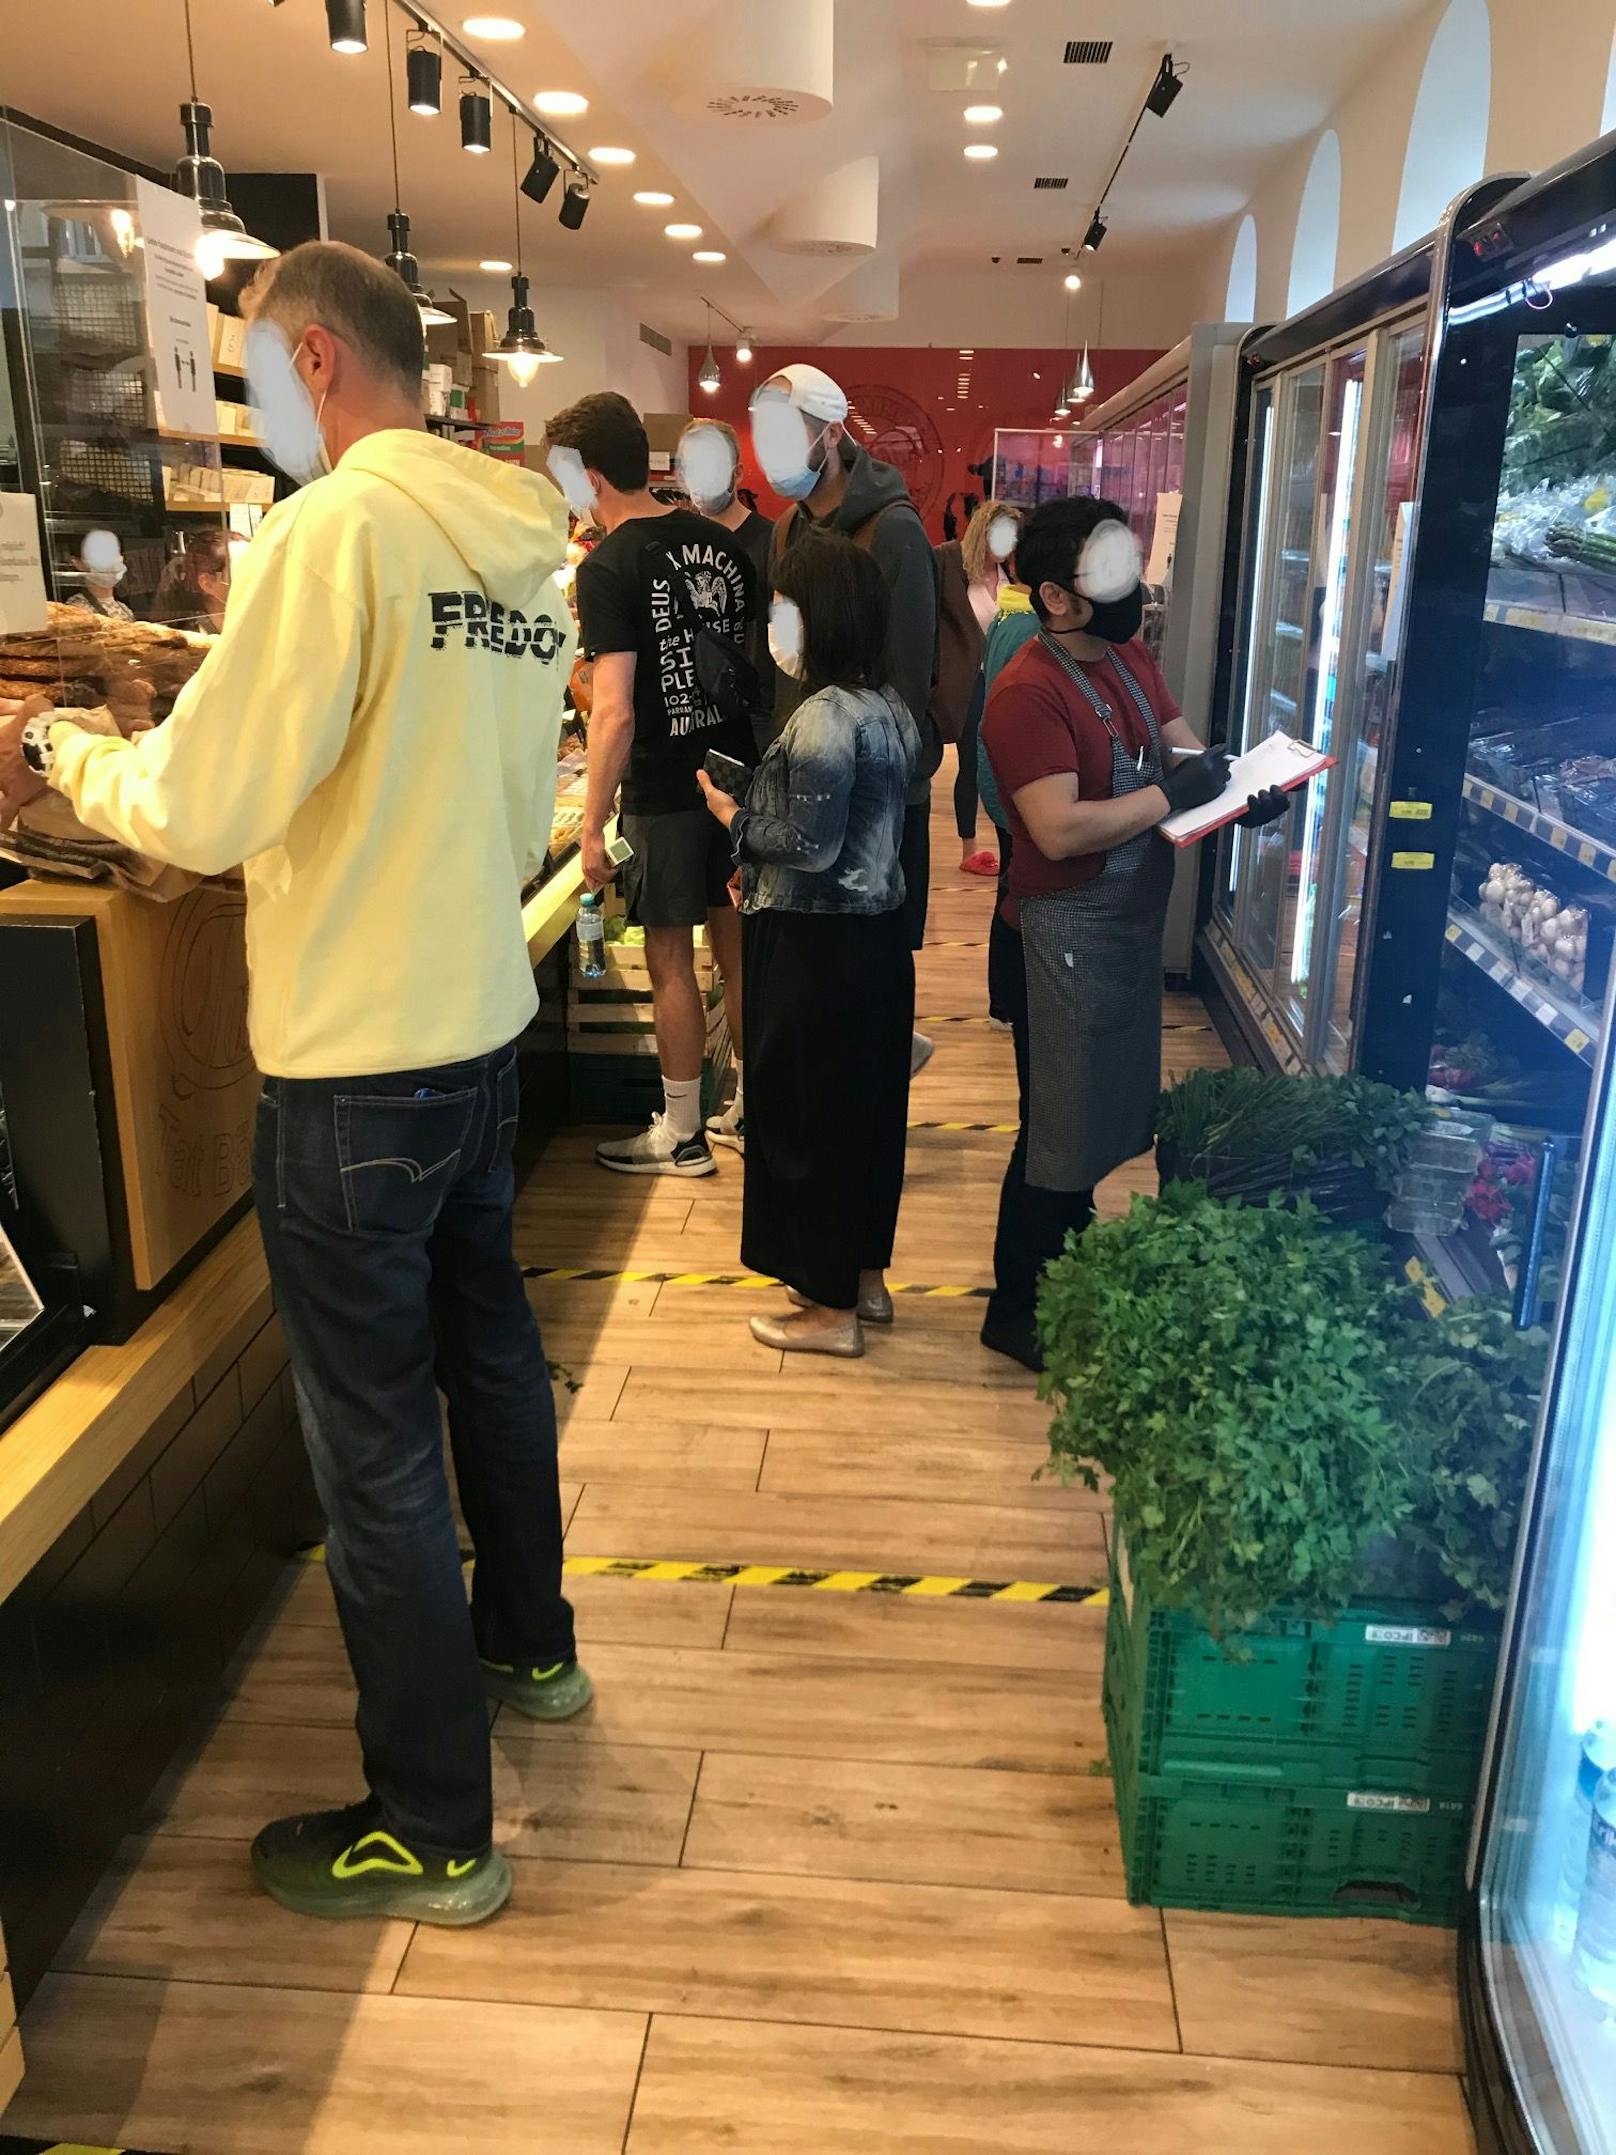 Kunden drängen sich in den Mini-Supermarkt, darunter viele ohne Mund-Nasen-Schutz. Trotz Abstandskleber wird die Sicherheitsmaßnahme ignoriert.